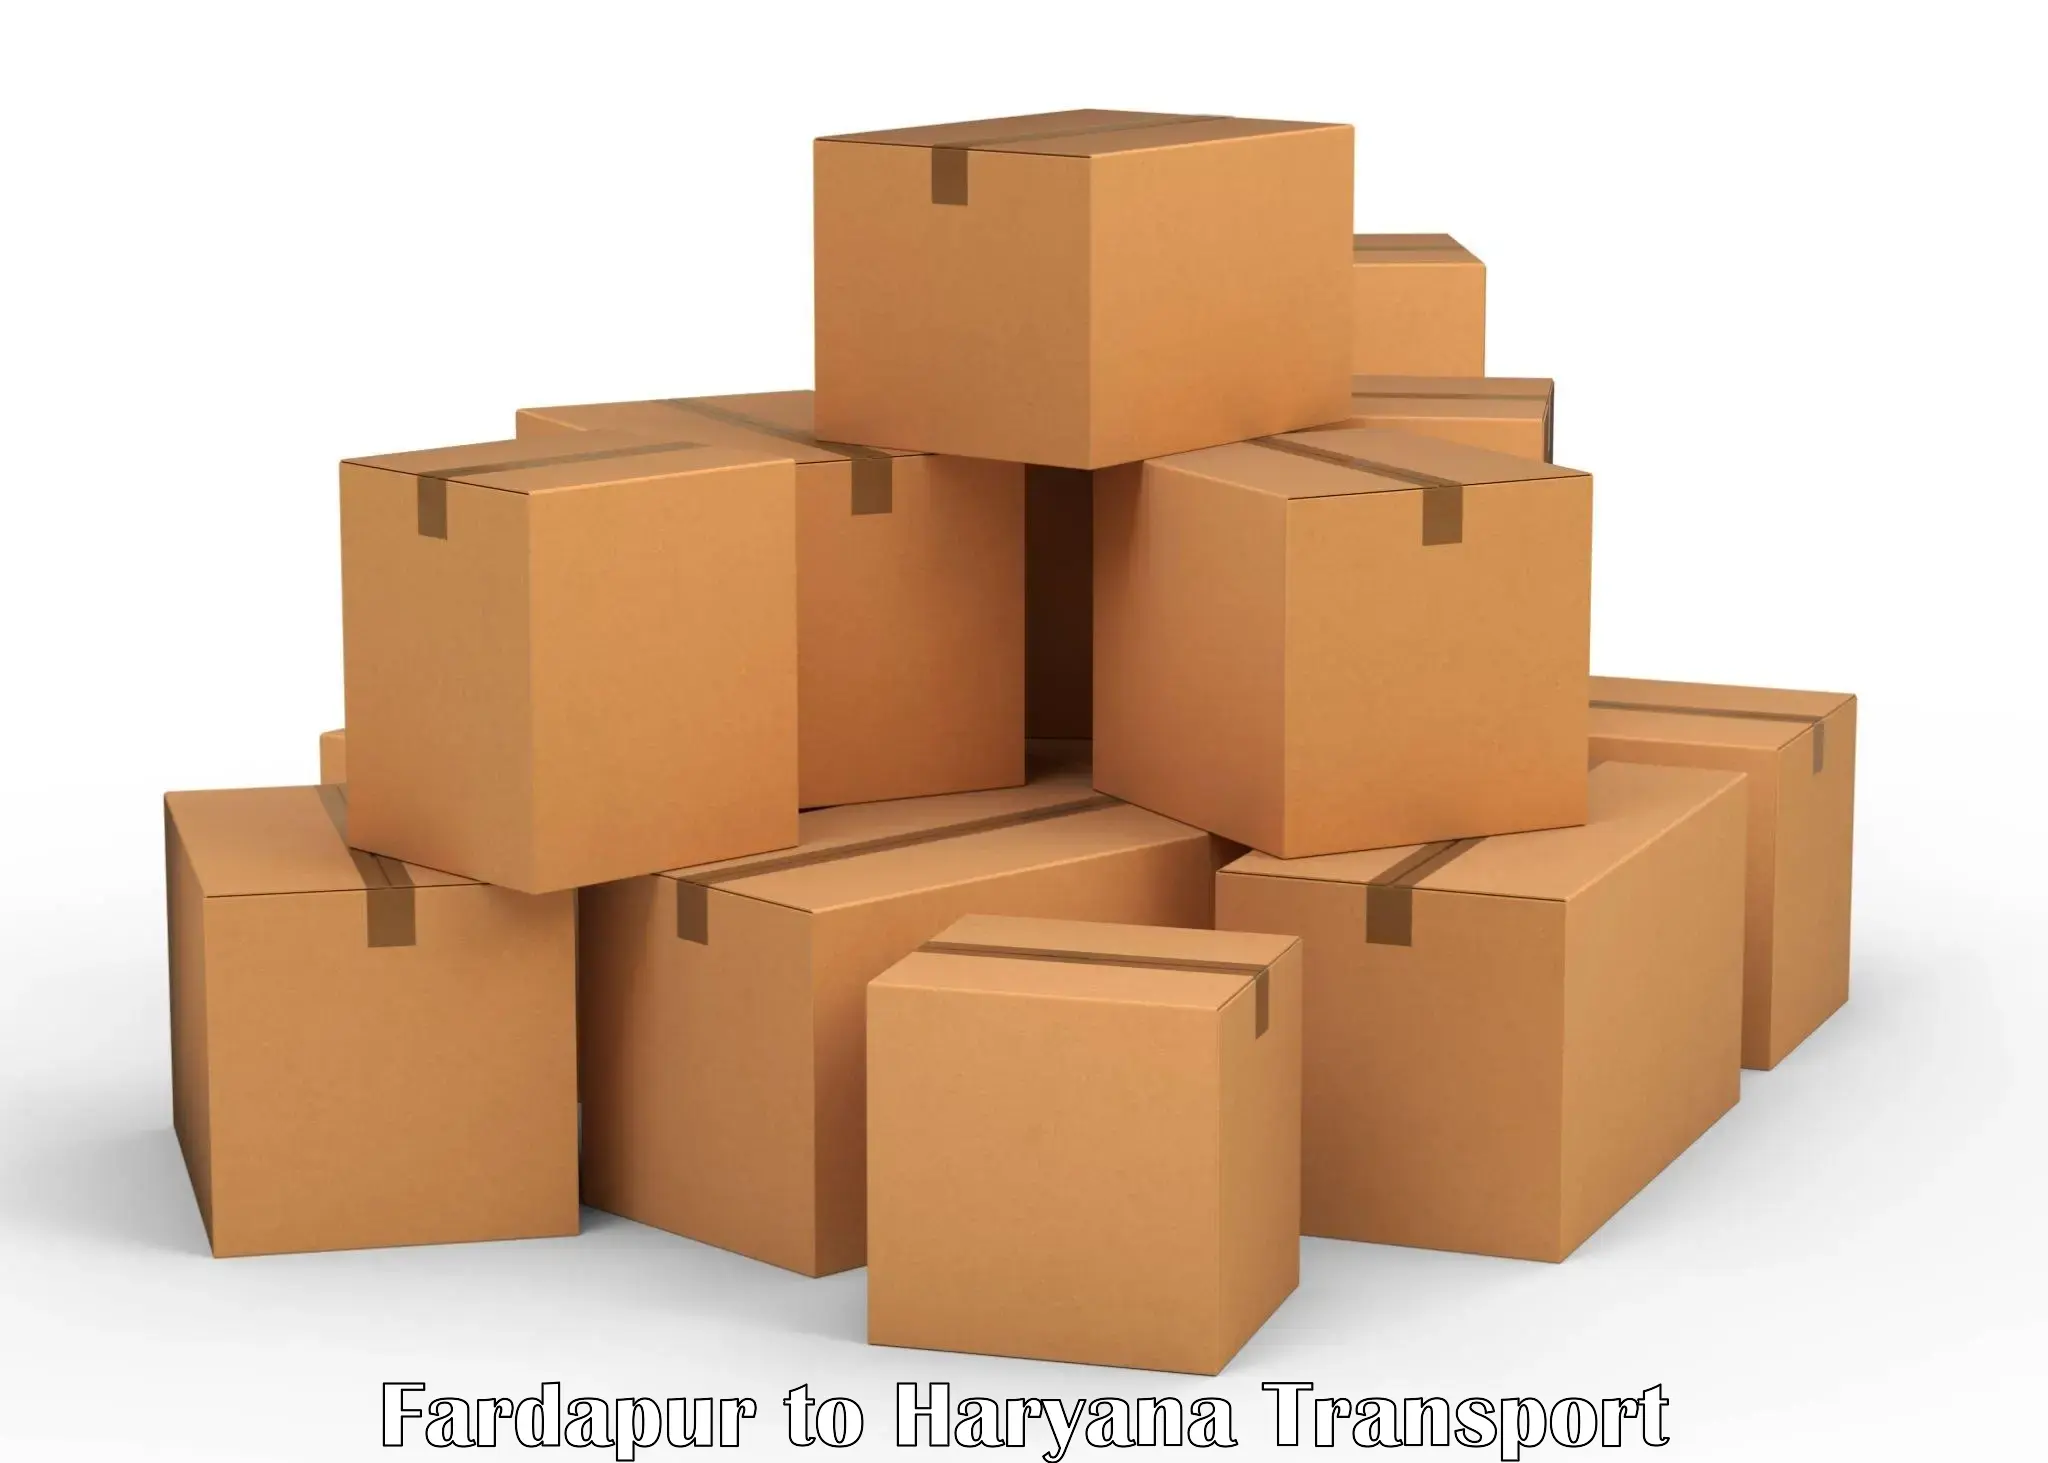 Furniture transport service Fardapur to Kurukshetra